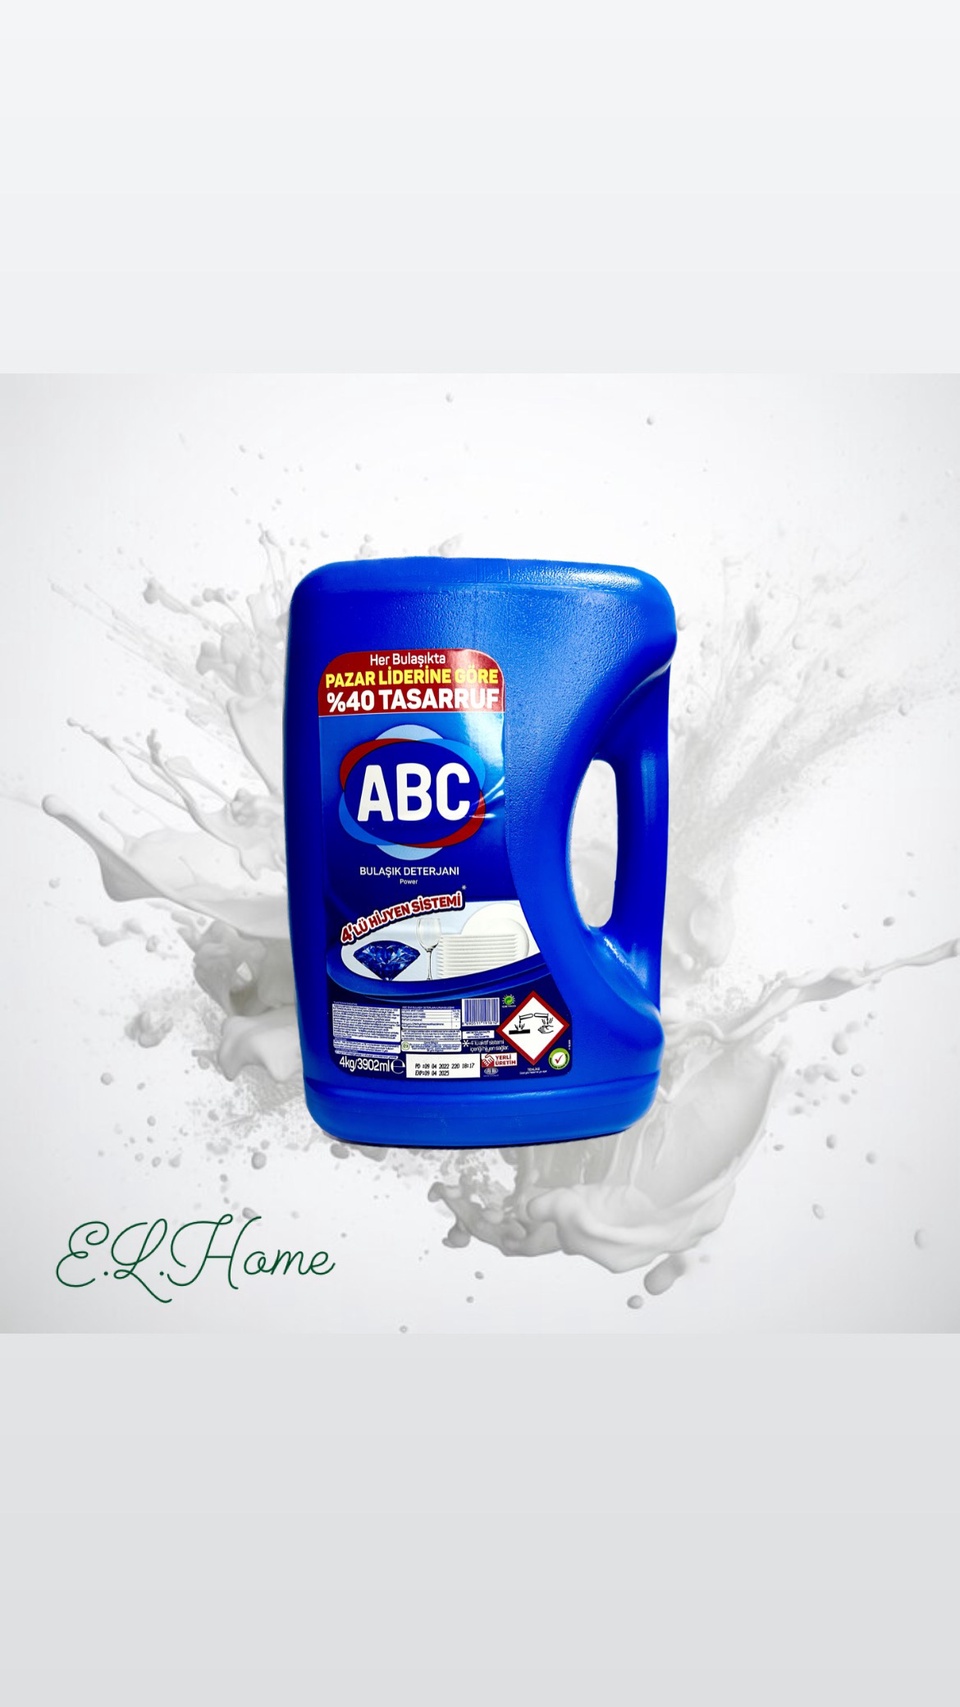 ABC Жидкое средство для мытья посуды Сила - 650 ₽, заказать онлайн.